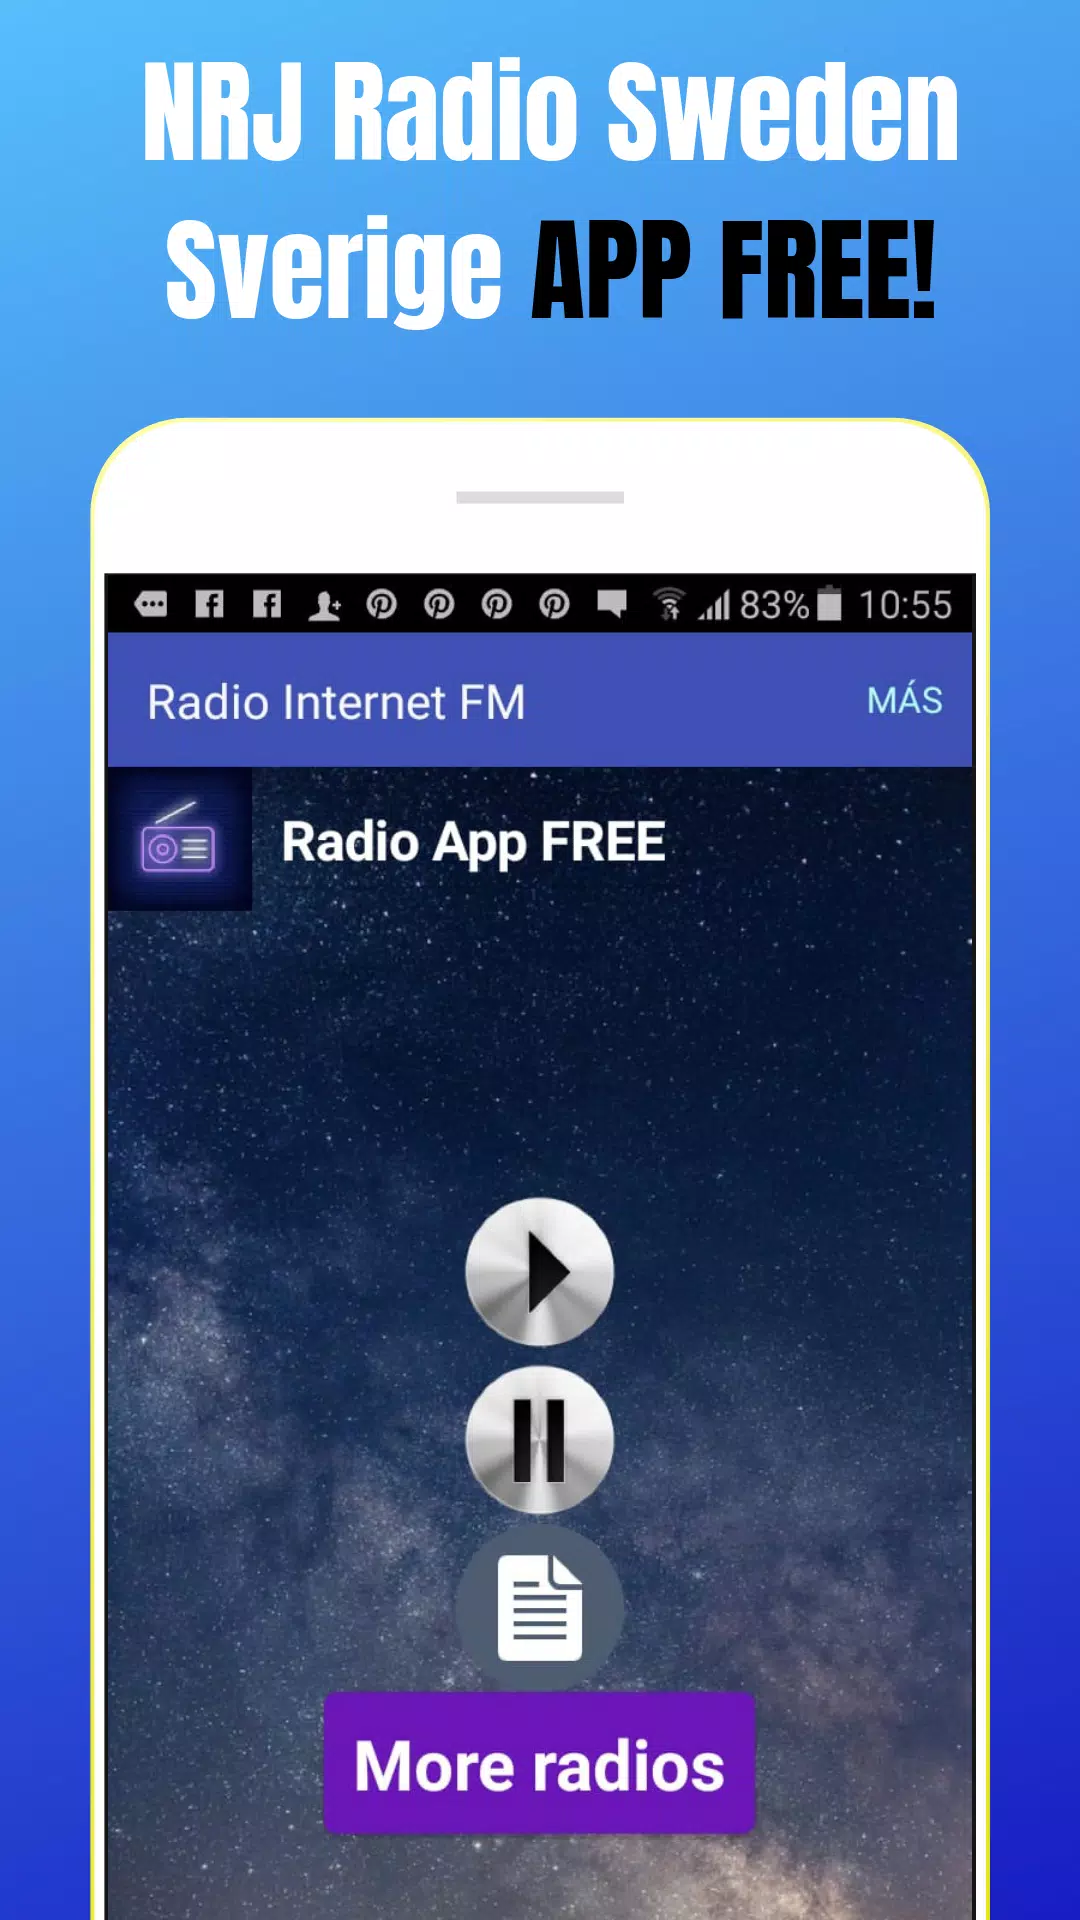 NRJ Radio Sweden Sweden App Online FM SE Free for Android - APK Download